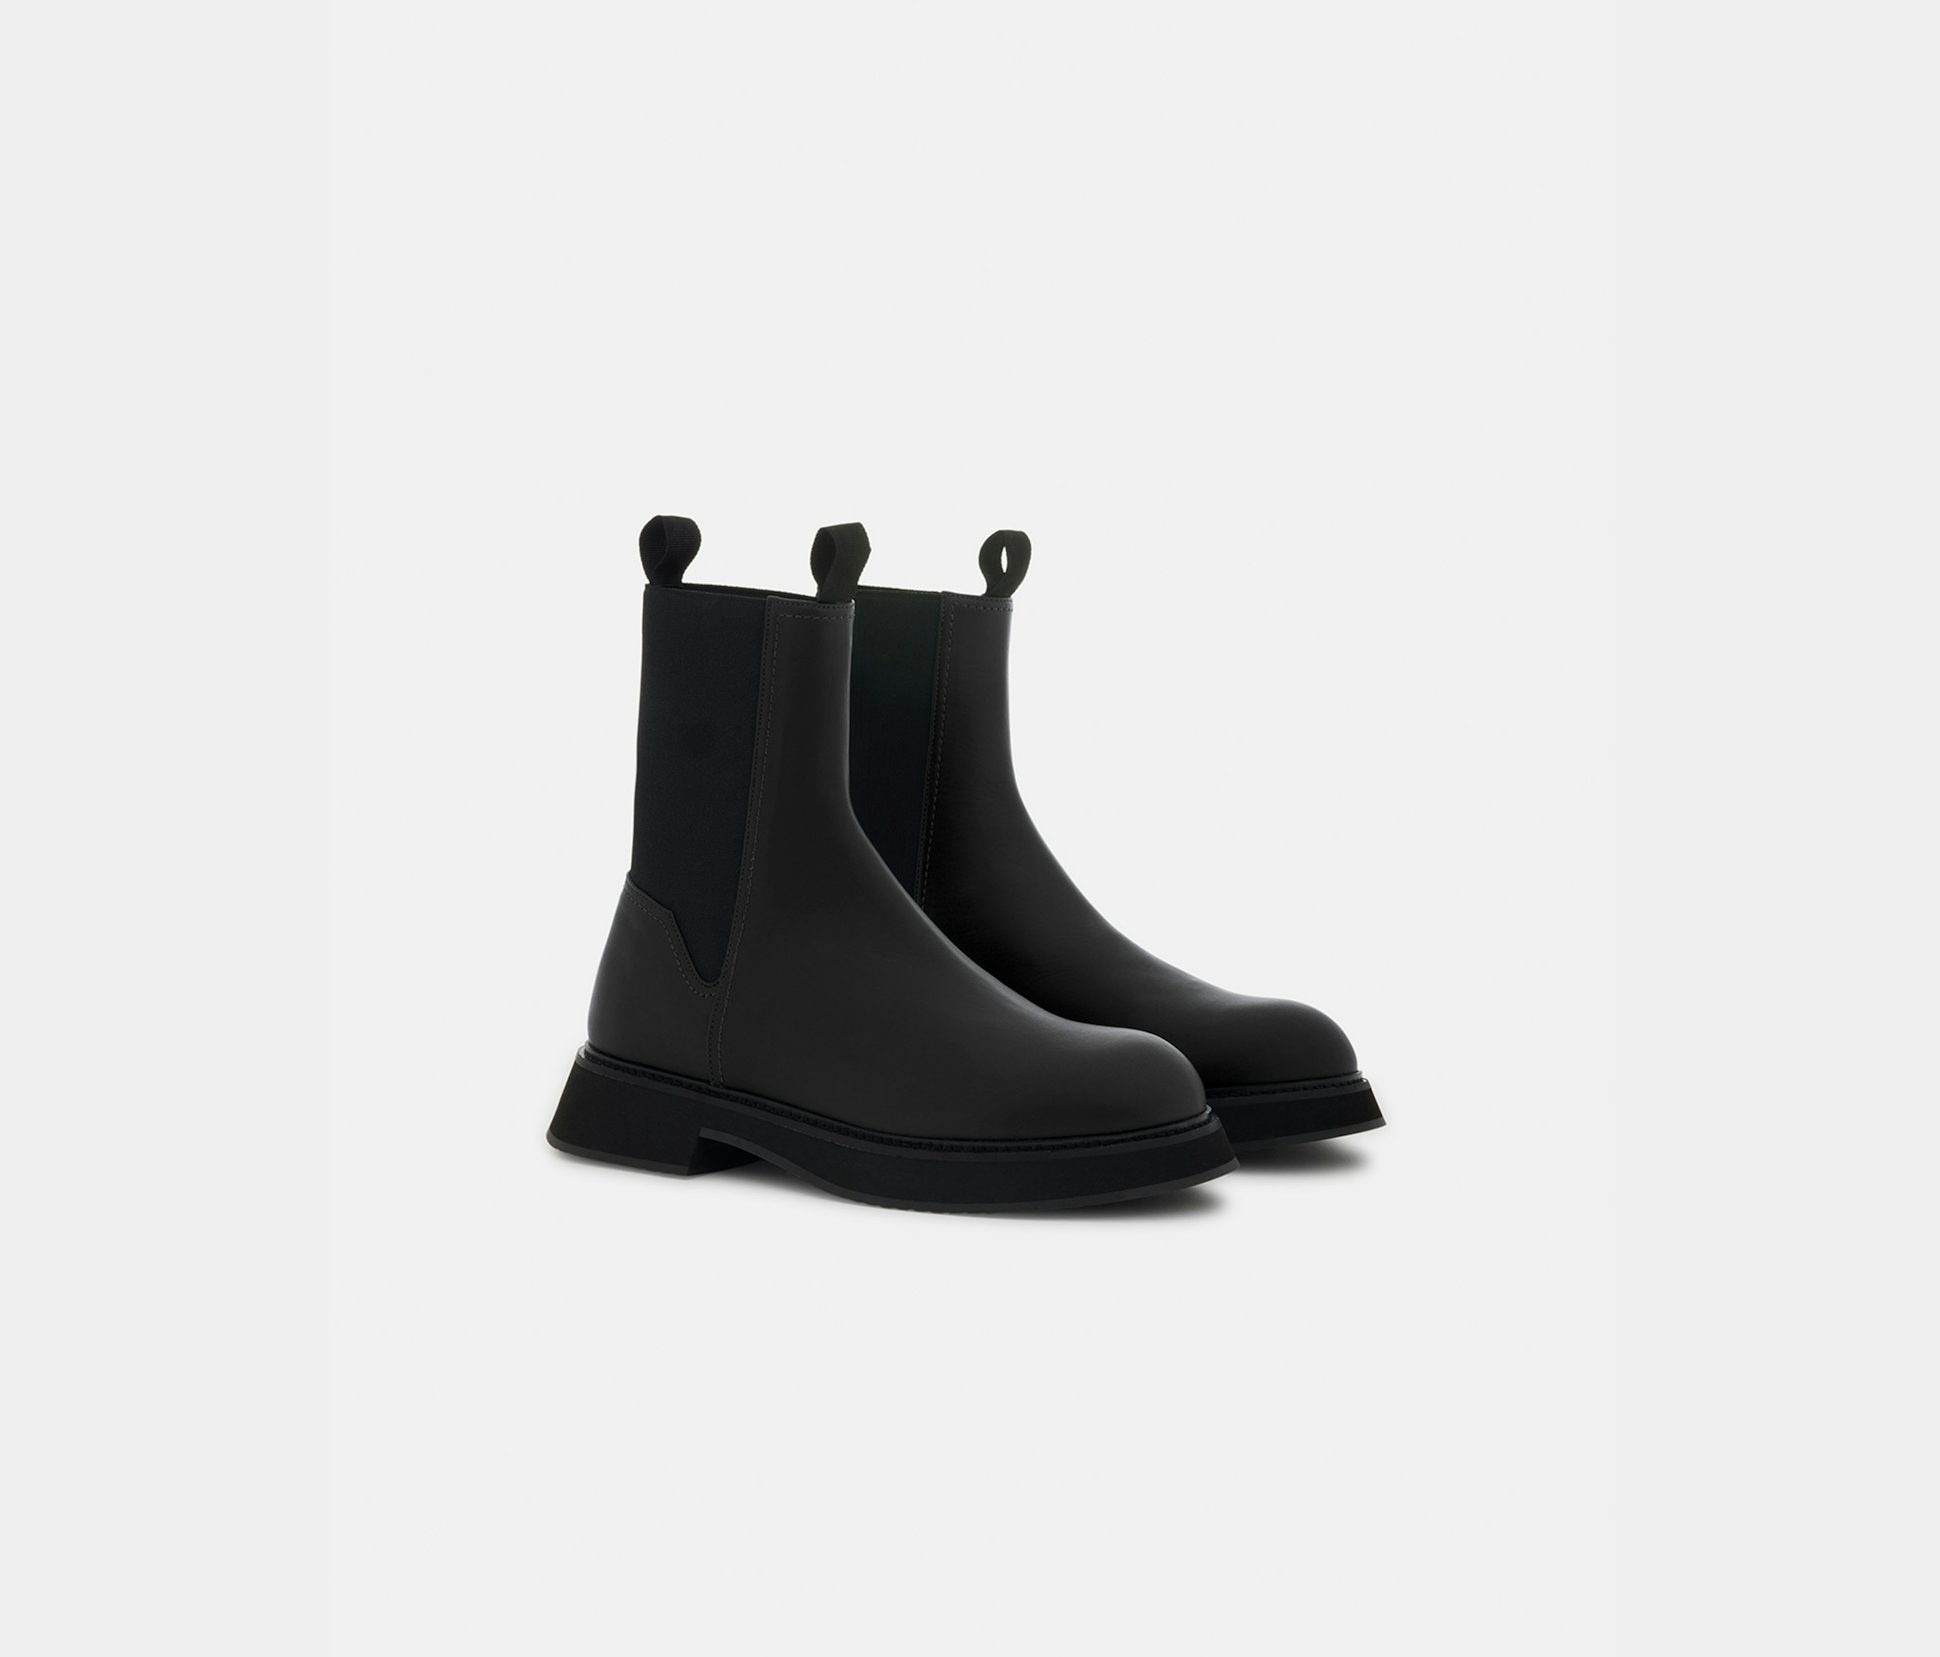 Calf leather boots black - Nina Ricci